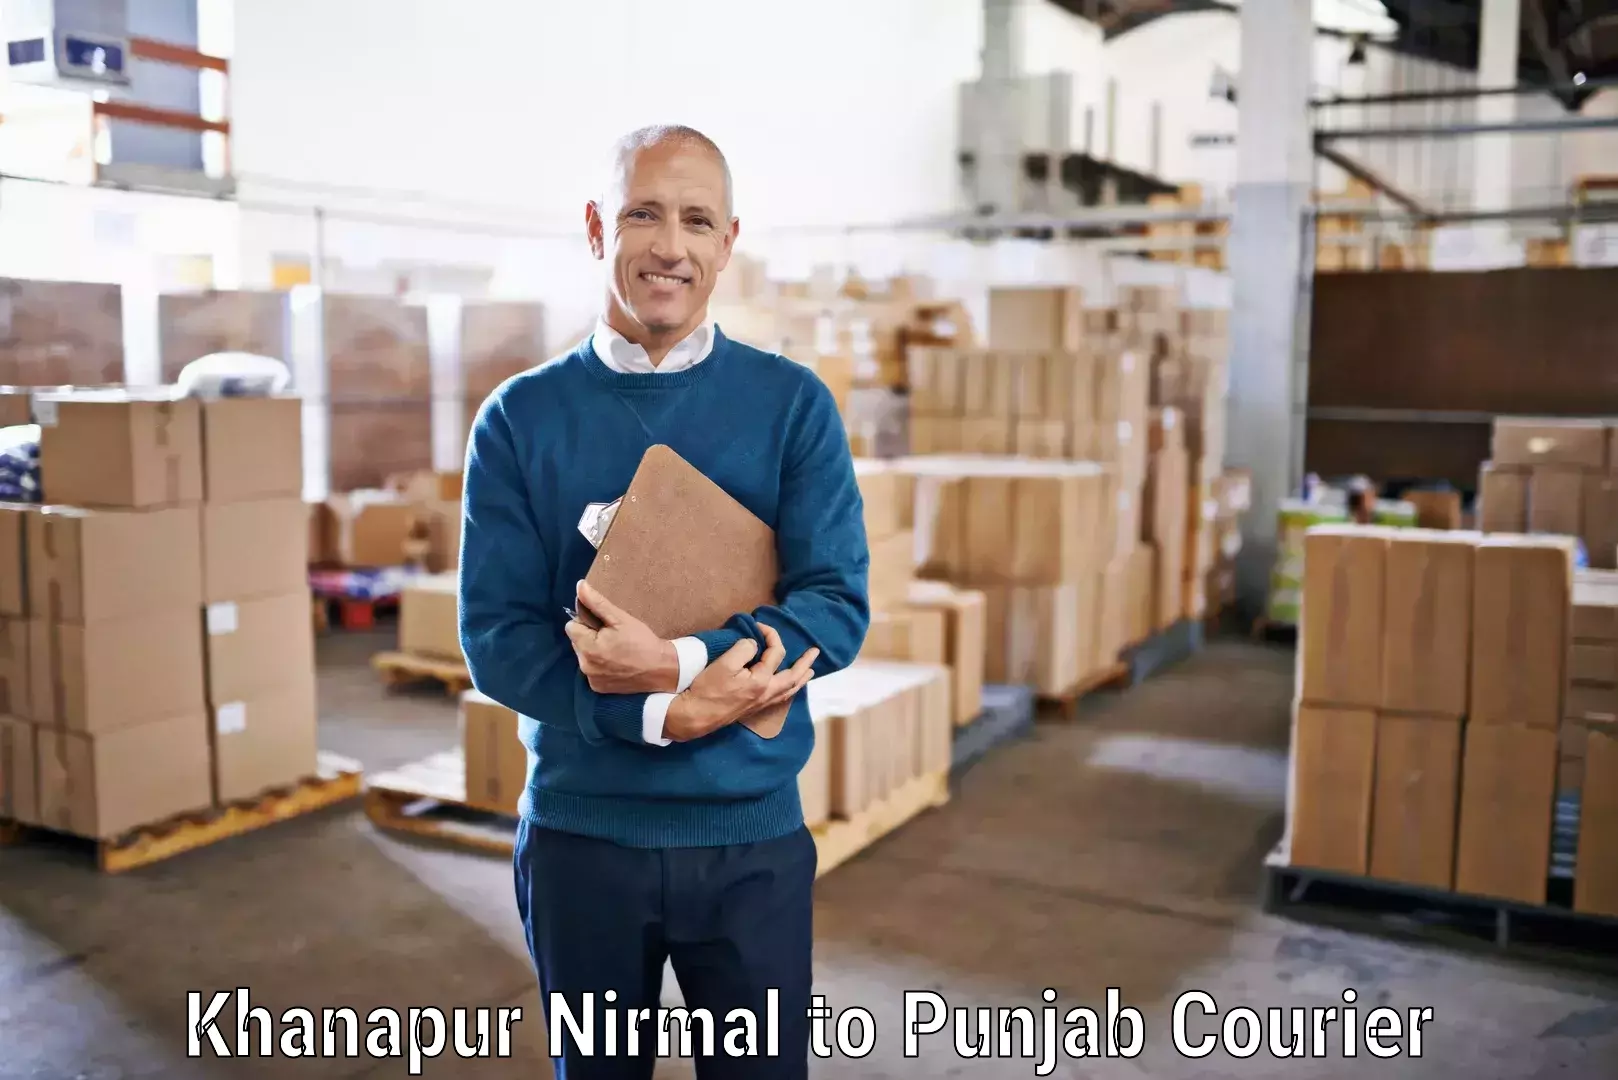 Reliable delivery network Khanapur Nirmal to Hoshiarpur